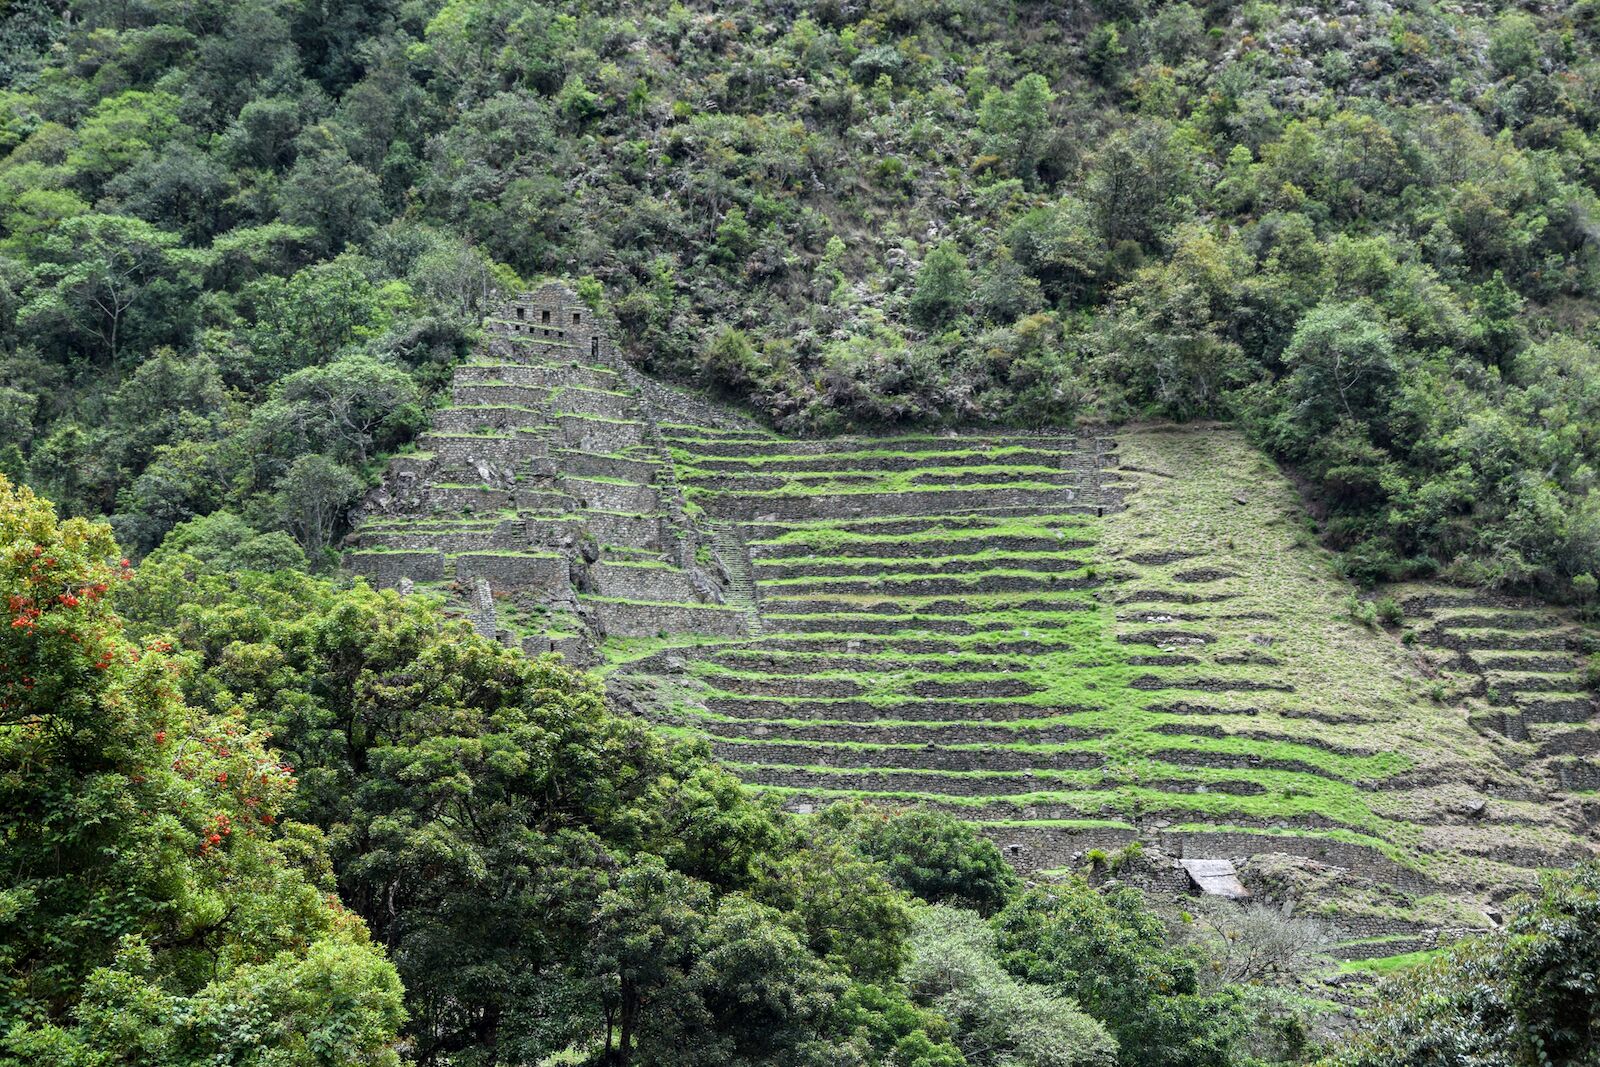 Inca Rail Peru - terraced archaeological site near Machu Picchu 